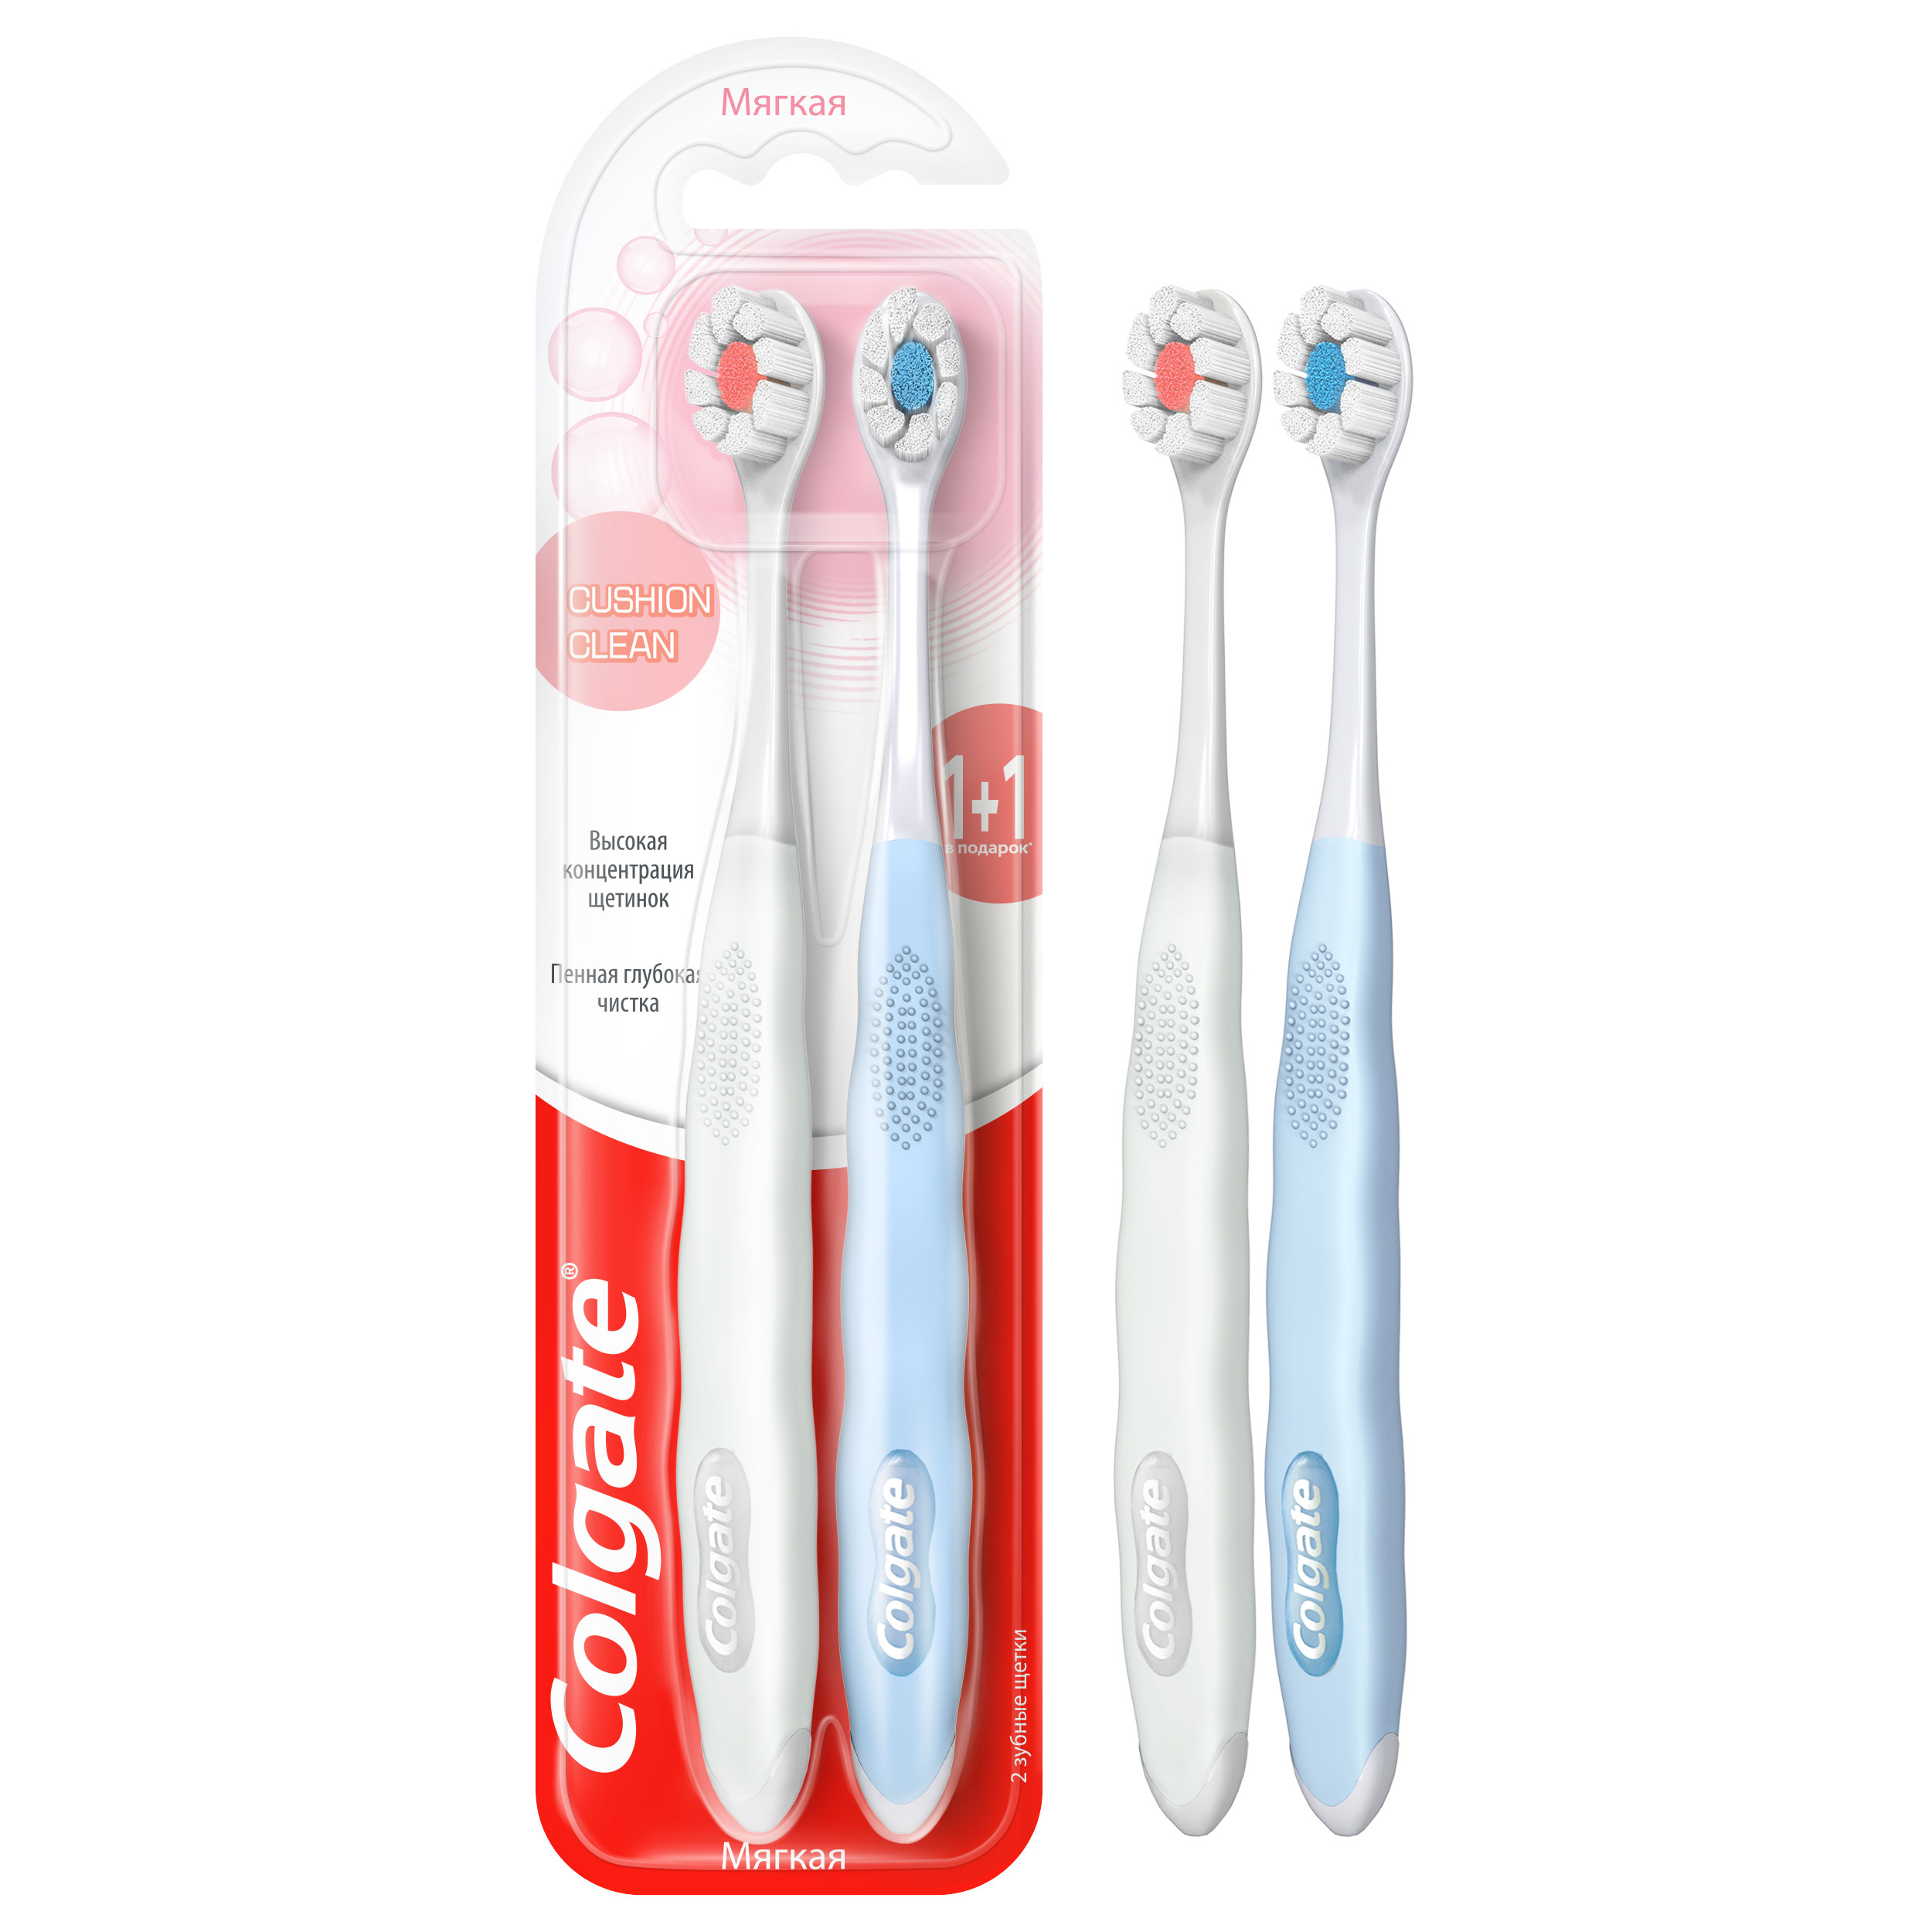 Щётка зубная Colgate Cushion Clean мягкая, 2 шт. зубная щётка colgate классика здоровья мягкая